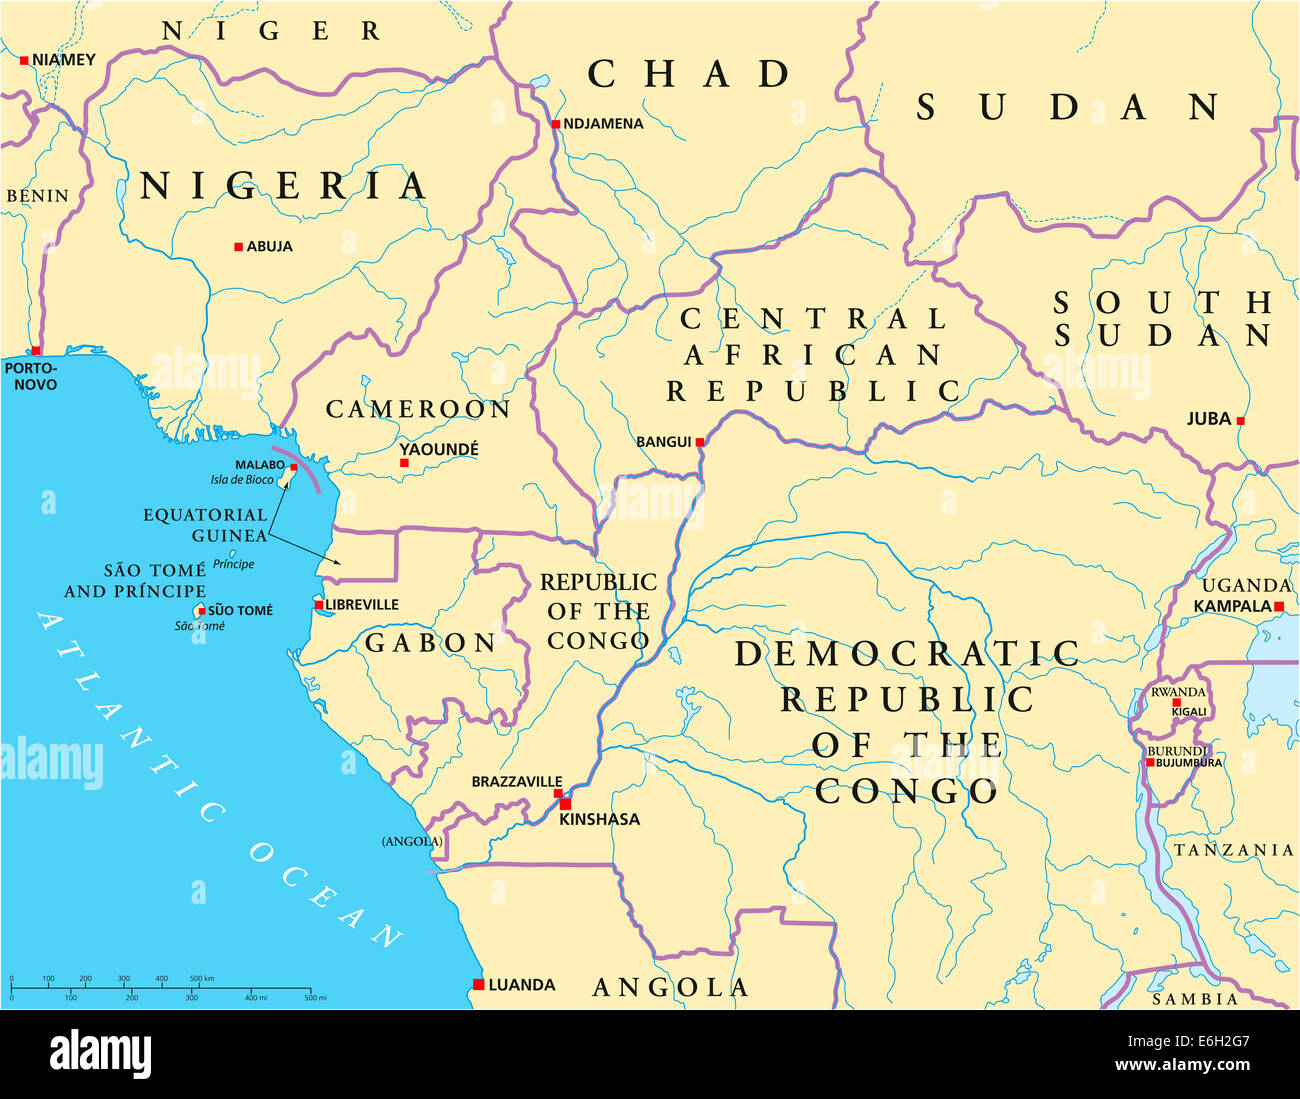 Westen Zentralafrika politische Karte mit Hauptstädten, Ländergrenzen, Flüssen und Seen. Abbildung mit englischer Beschriftung. Stockfoto